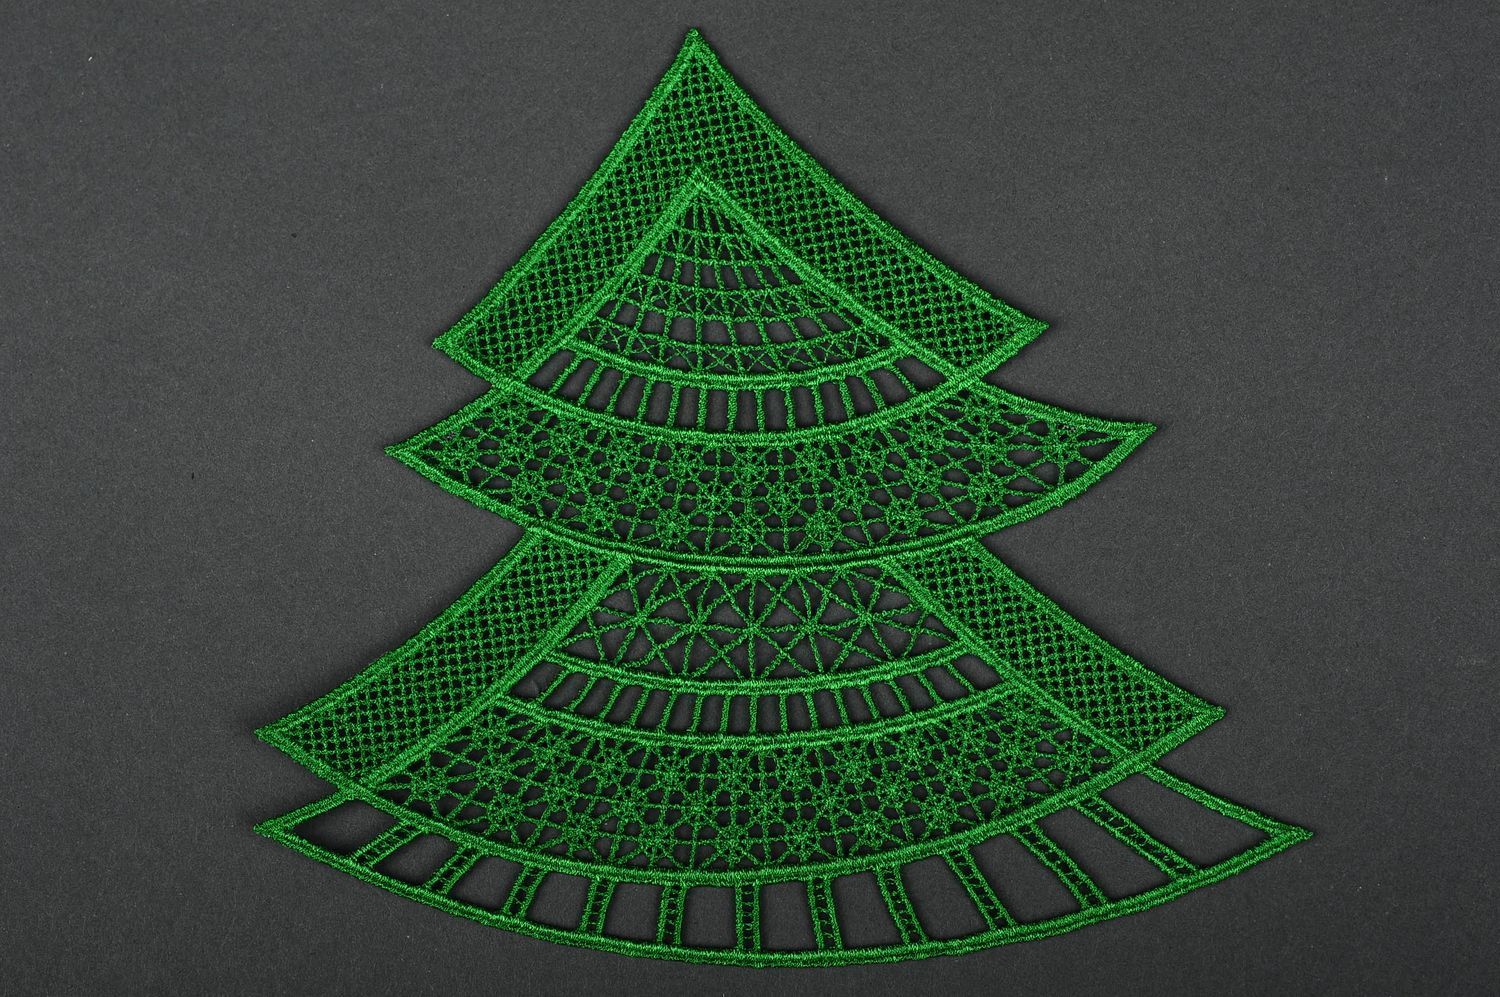 Árbol de Navidad hecho a mano elemento decorativo adorno navideño color verde foto 4